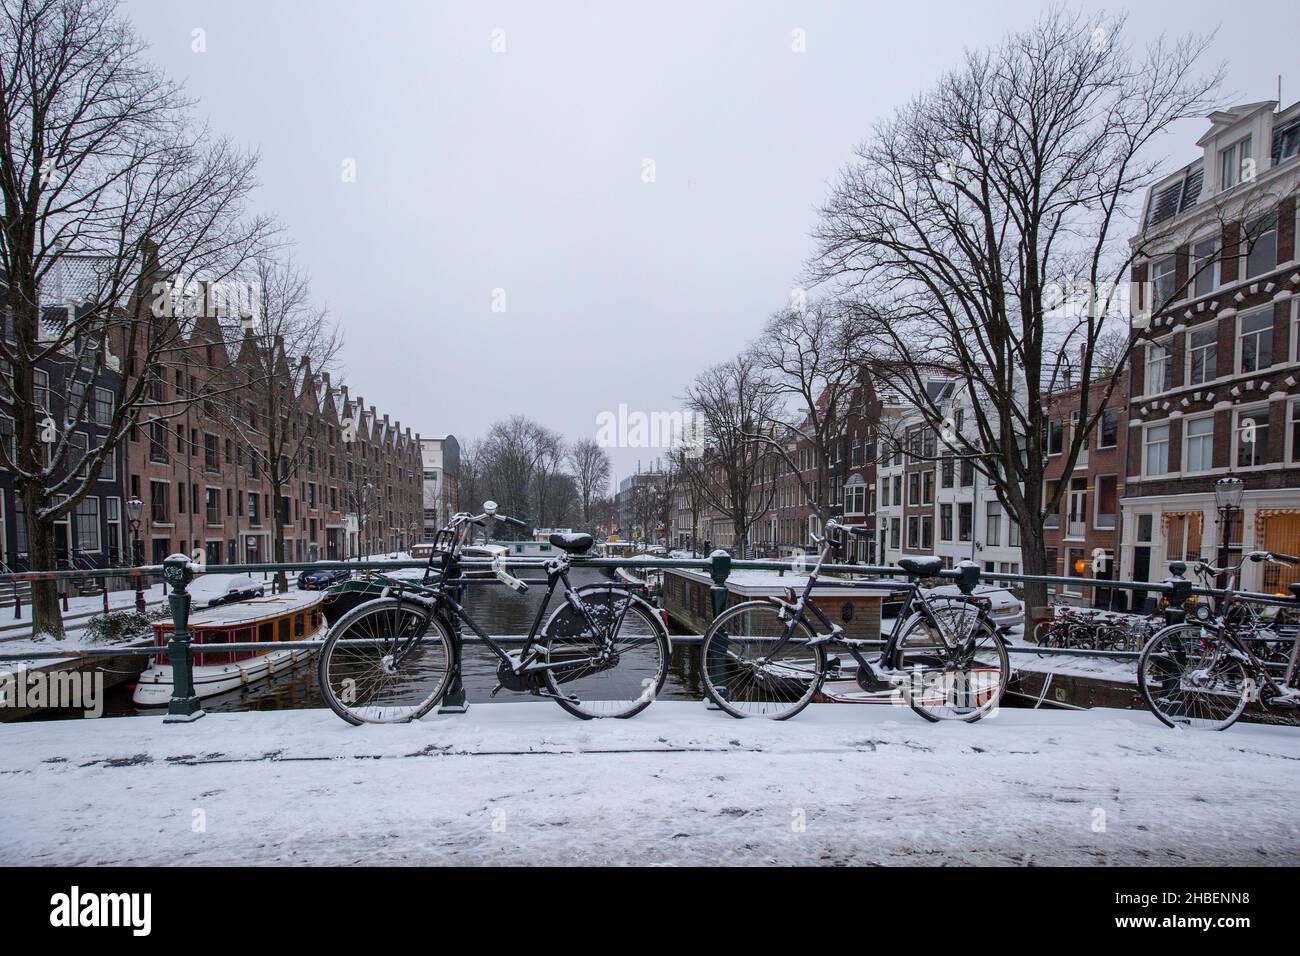 Amsterdam - Blick auf Fahrräder, die besser nur geschoben werden, damit niemand auf dem rutschigen Untergrund rutscht, Nordholland, Niederlande, Amsterdam, 22,01. Stockfoto